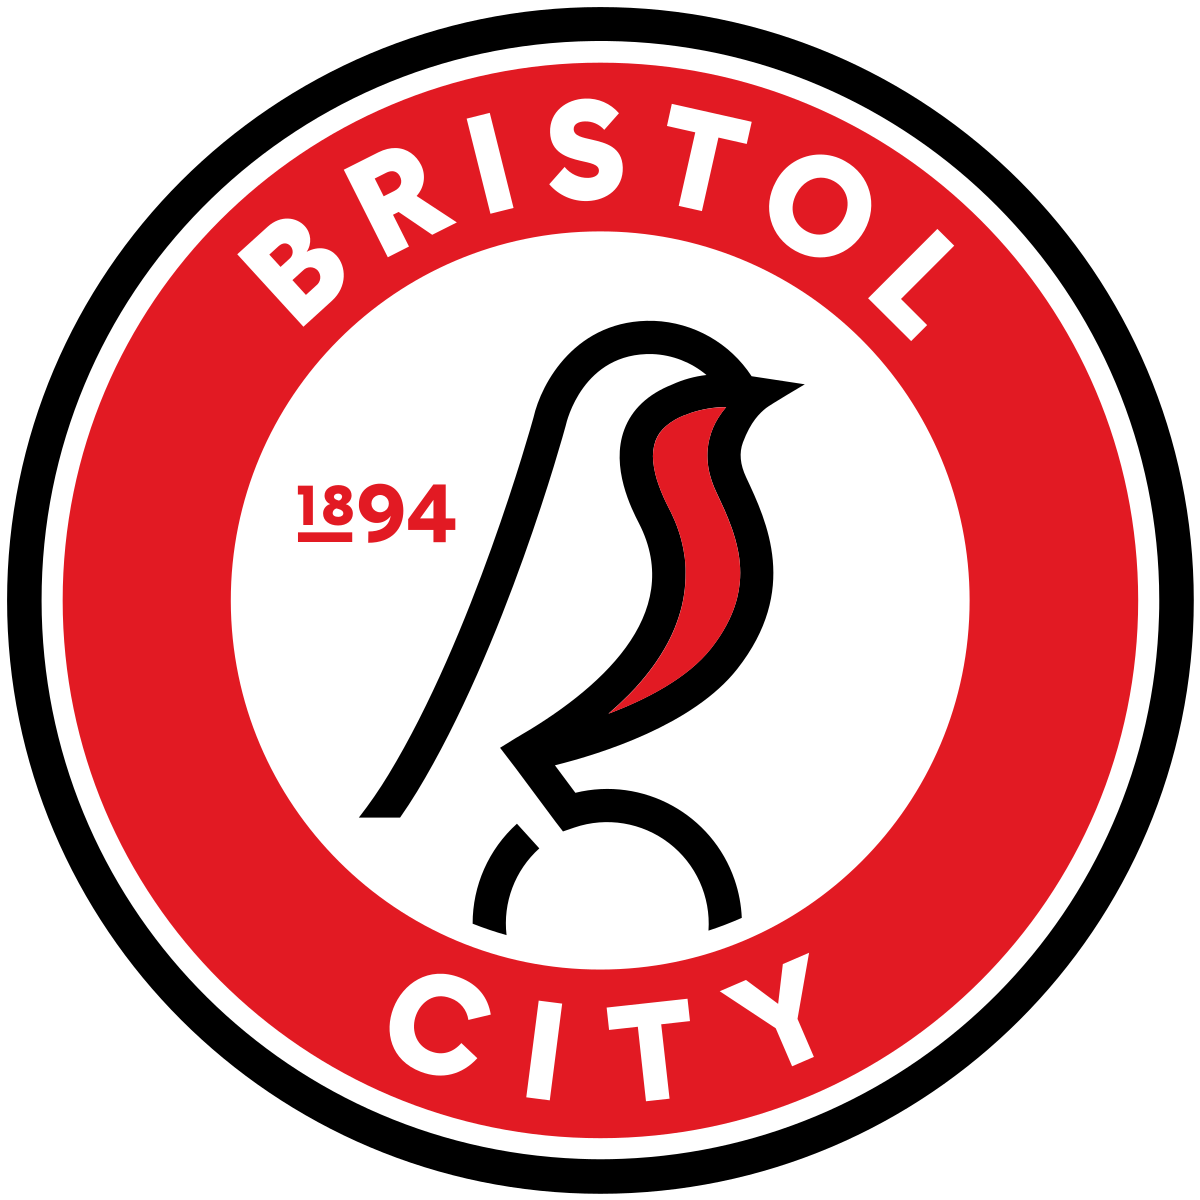 Bristol City v Birmingham City - Hospitality